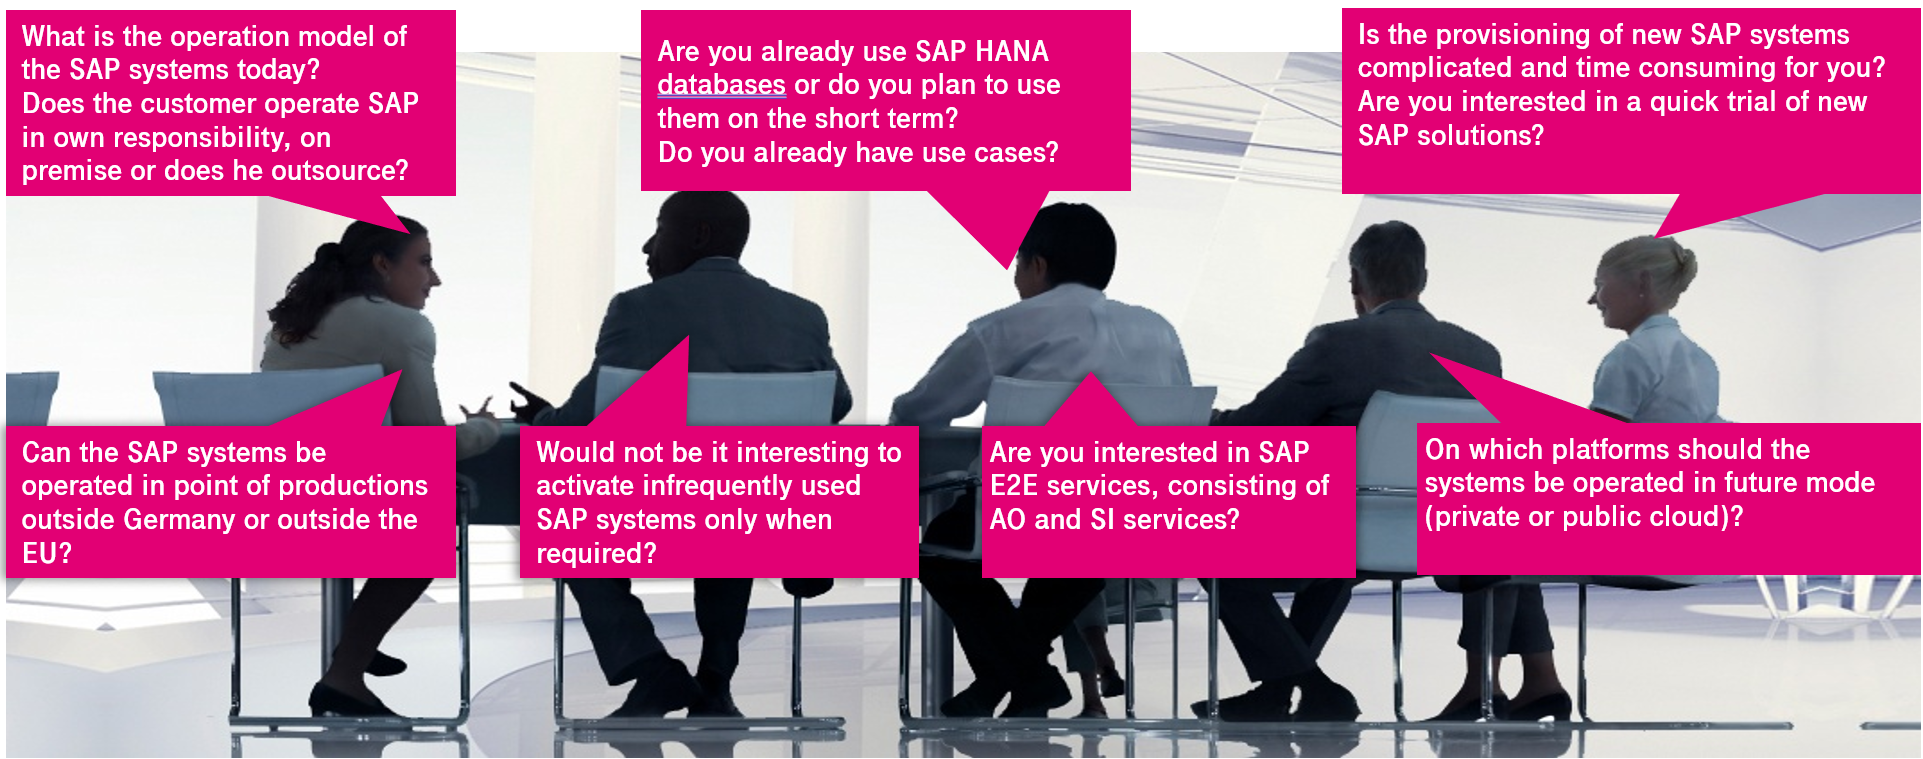 mensen aan het praten over de vraagstukken rondom SAP